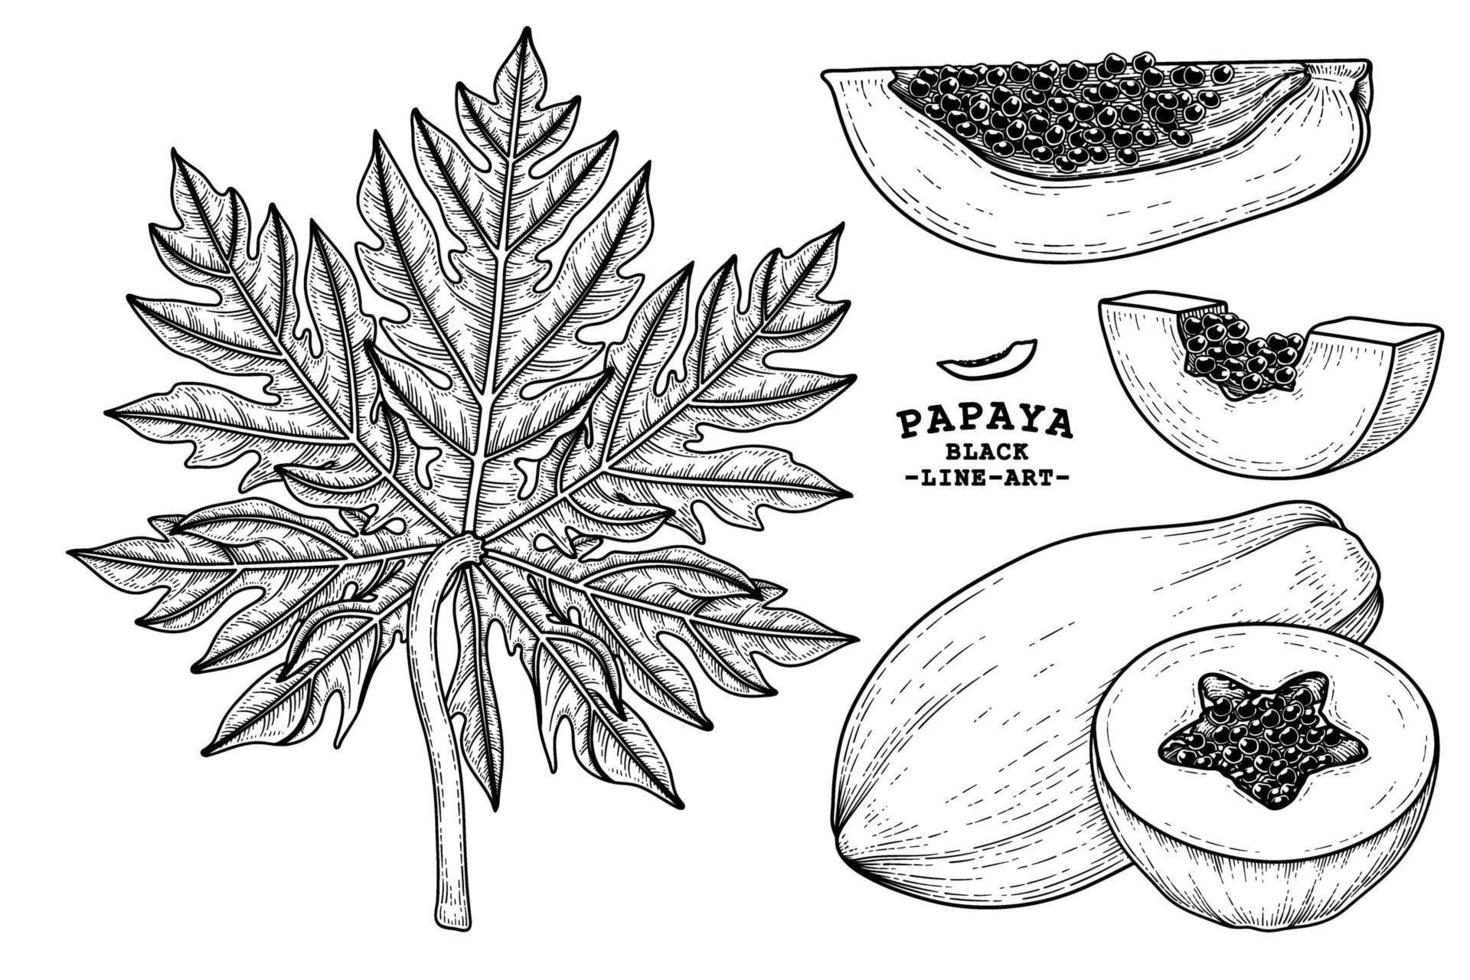 ensemble d'éléments dessinés à la main de fruits de papaye illustration botanique vecteur